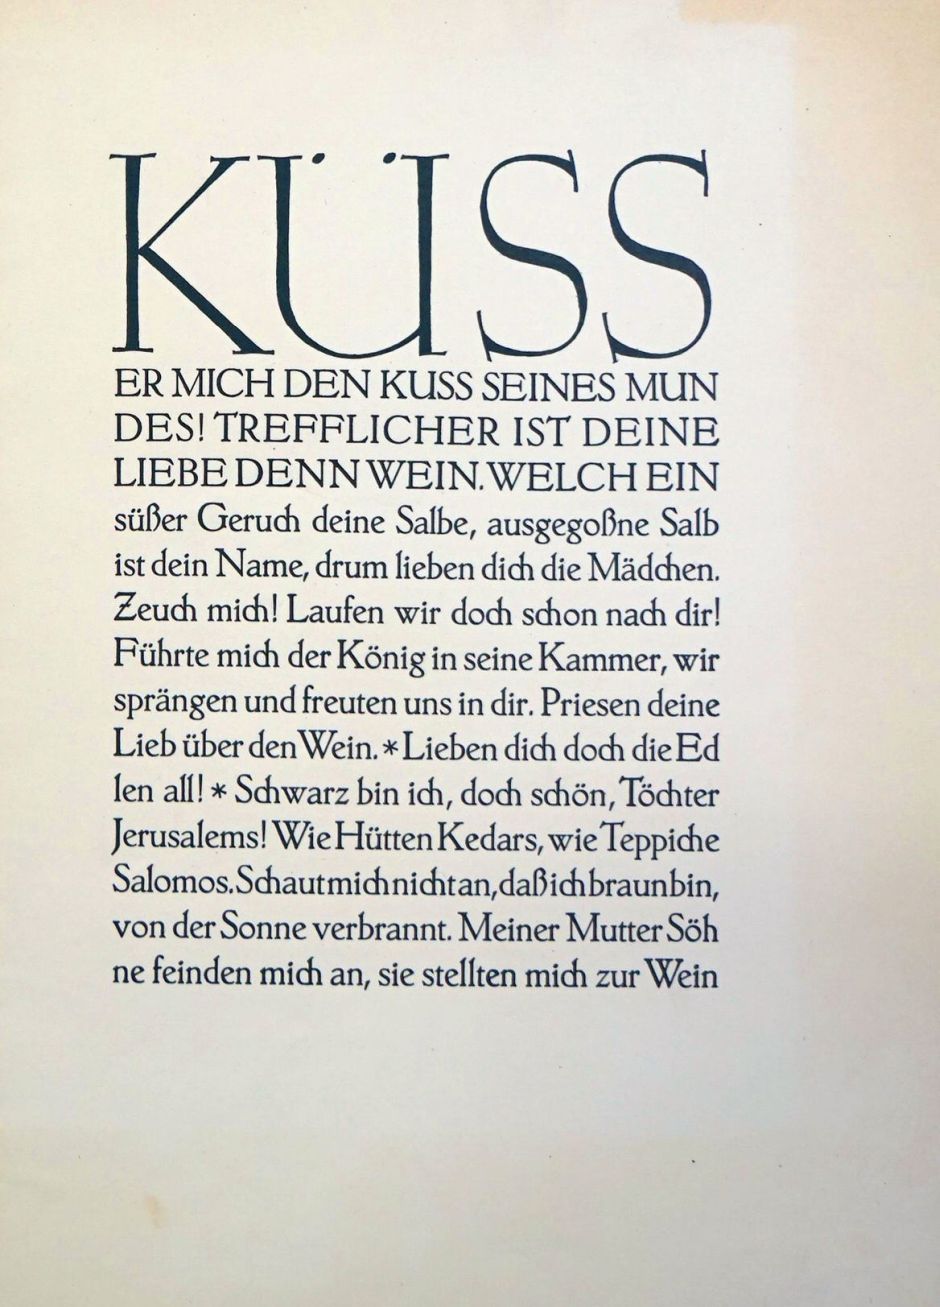 Lot 3096, Auction  115, Euphorion Verlag, Verlagsbericht (und Beigaben)